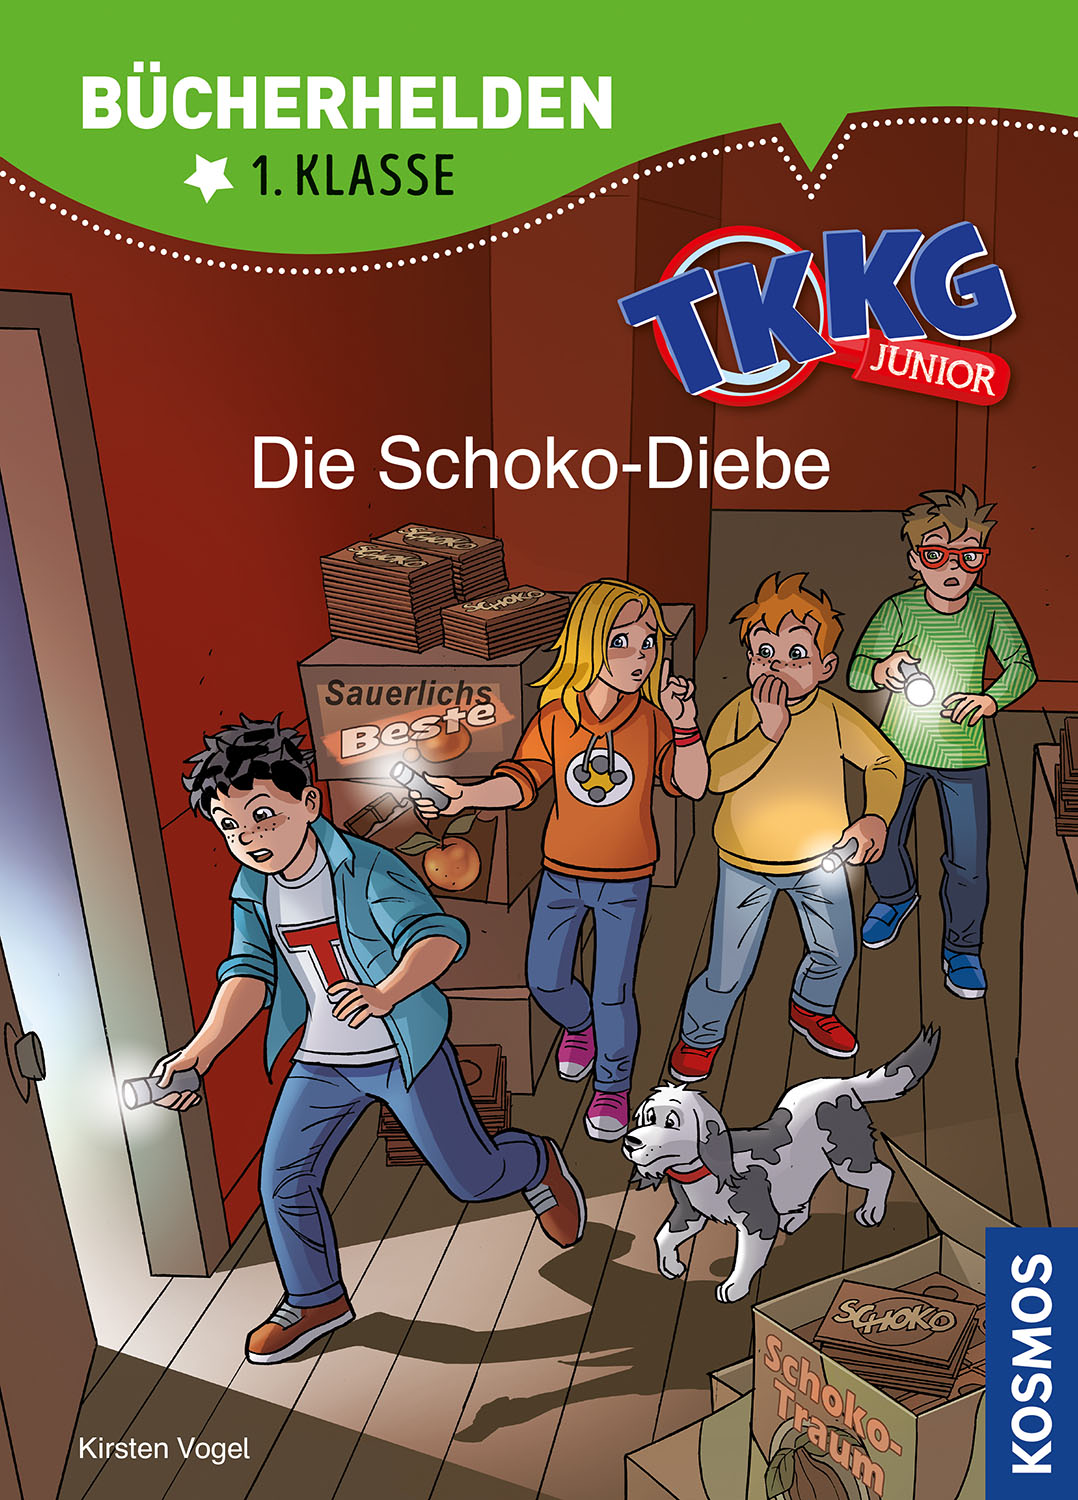 TKKG Junior Buch, Band 500: TKKG Junior- Die Schoko-Diebe